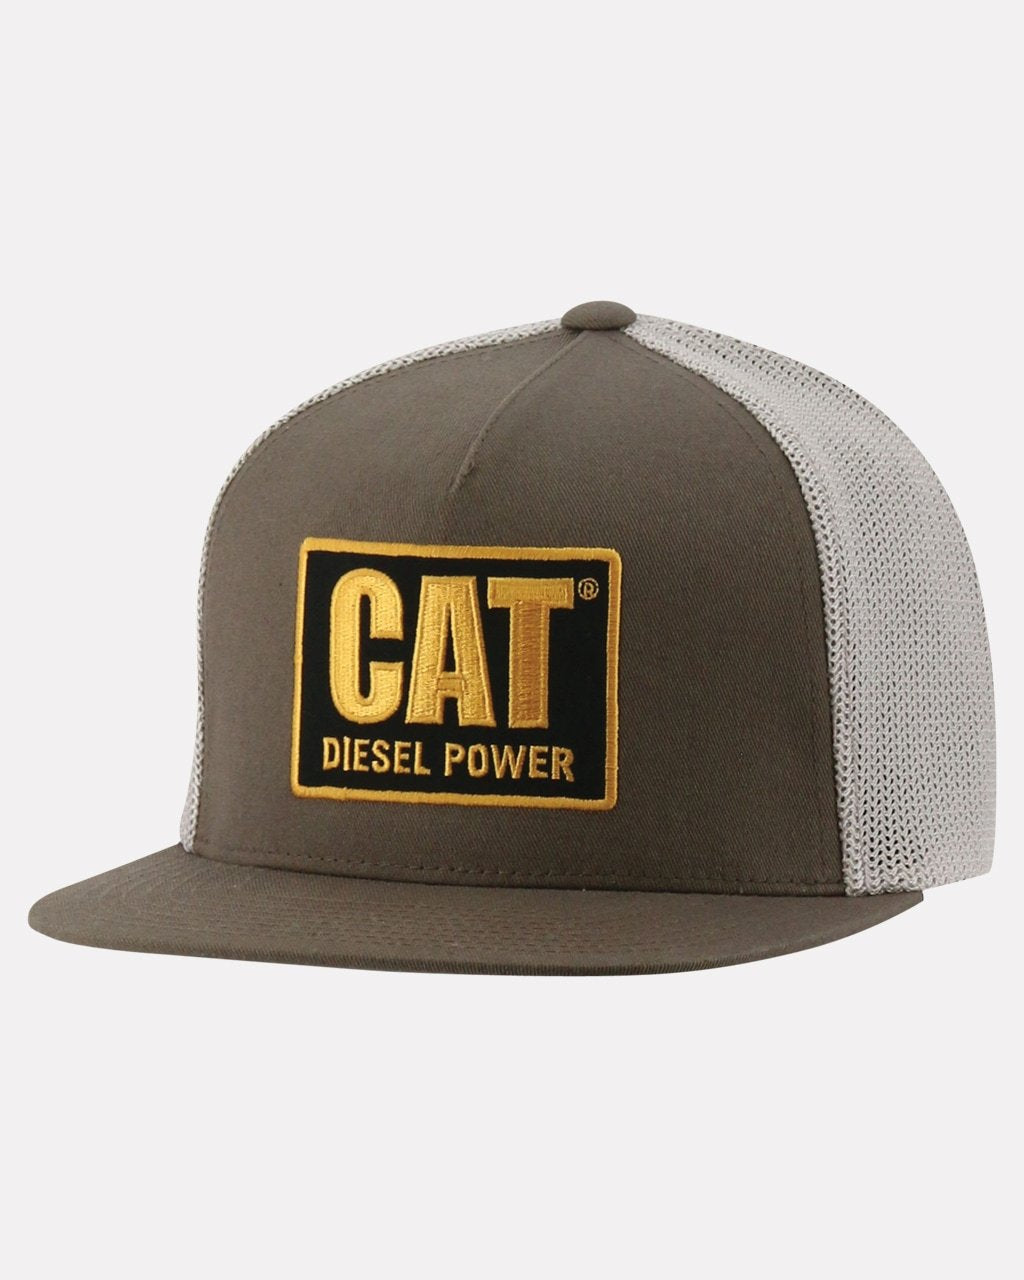 CAT Diesel Power Flat Bill Cap - Work World - Workwear, Work Boots, Safety Gear